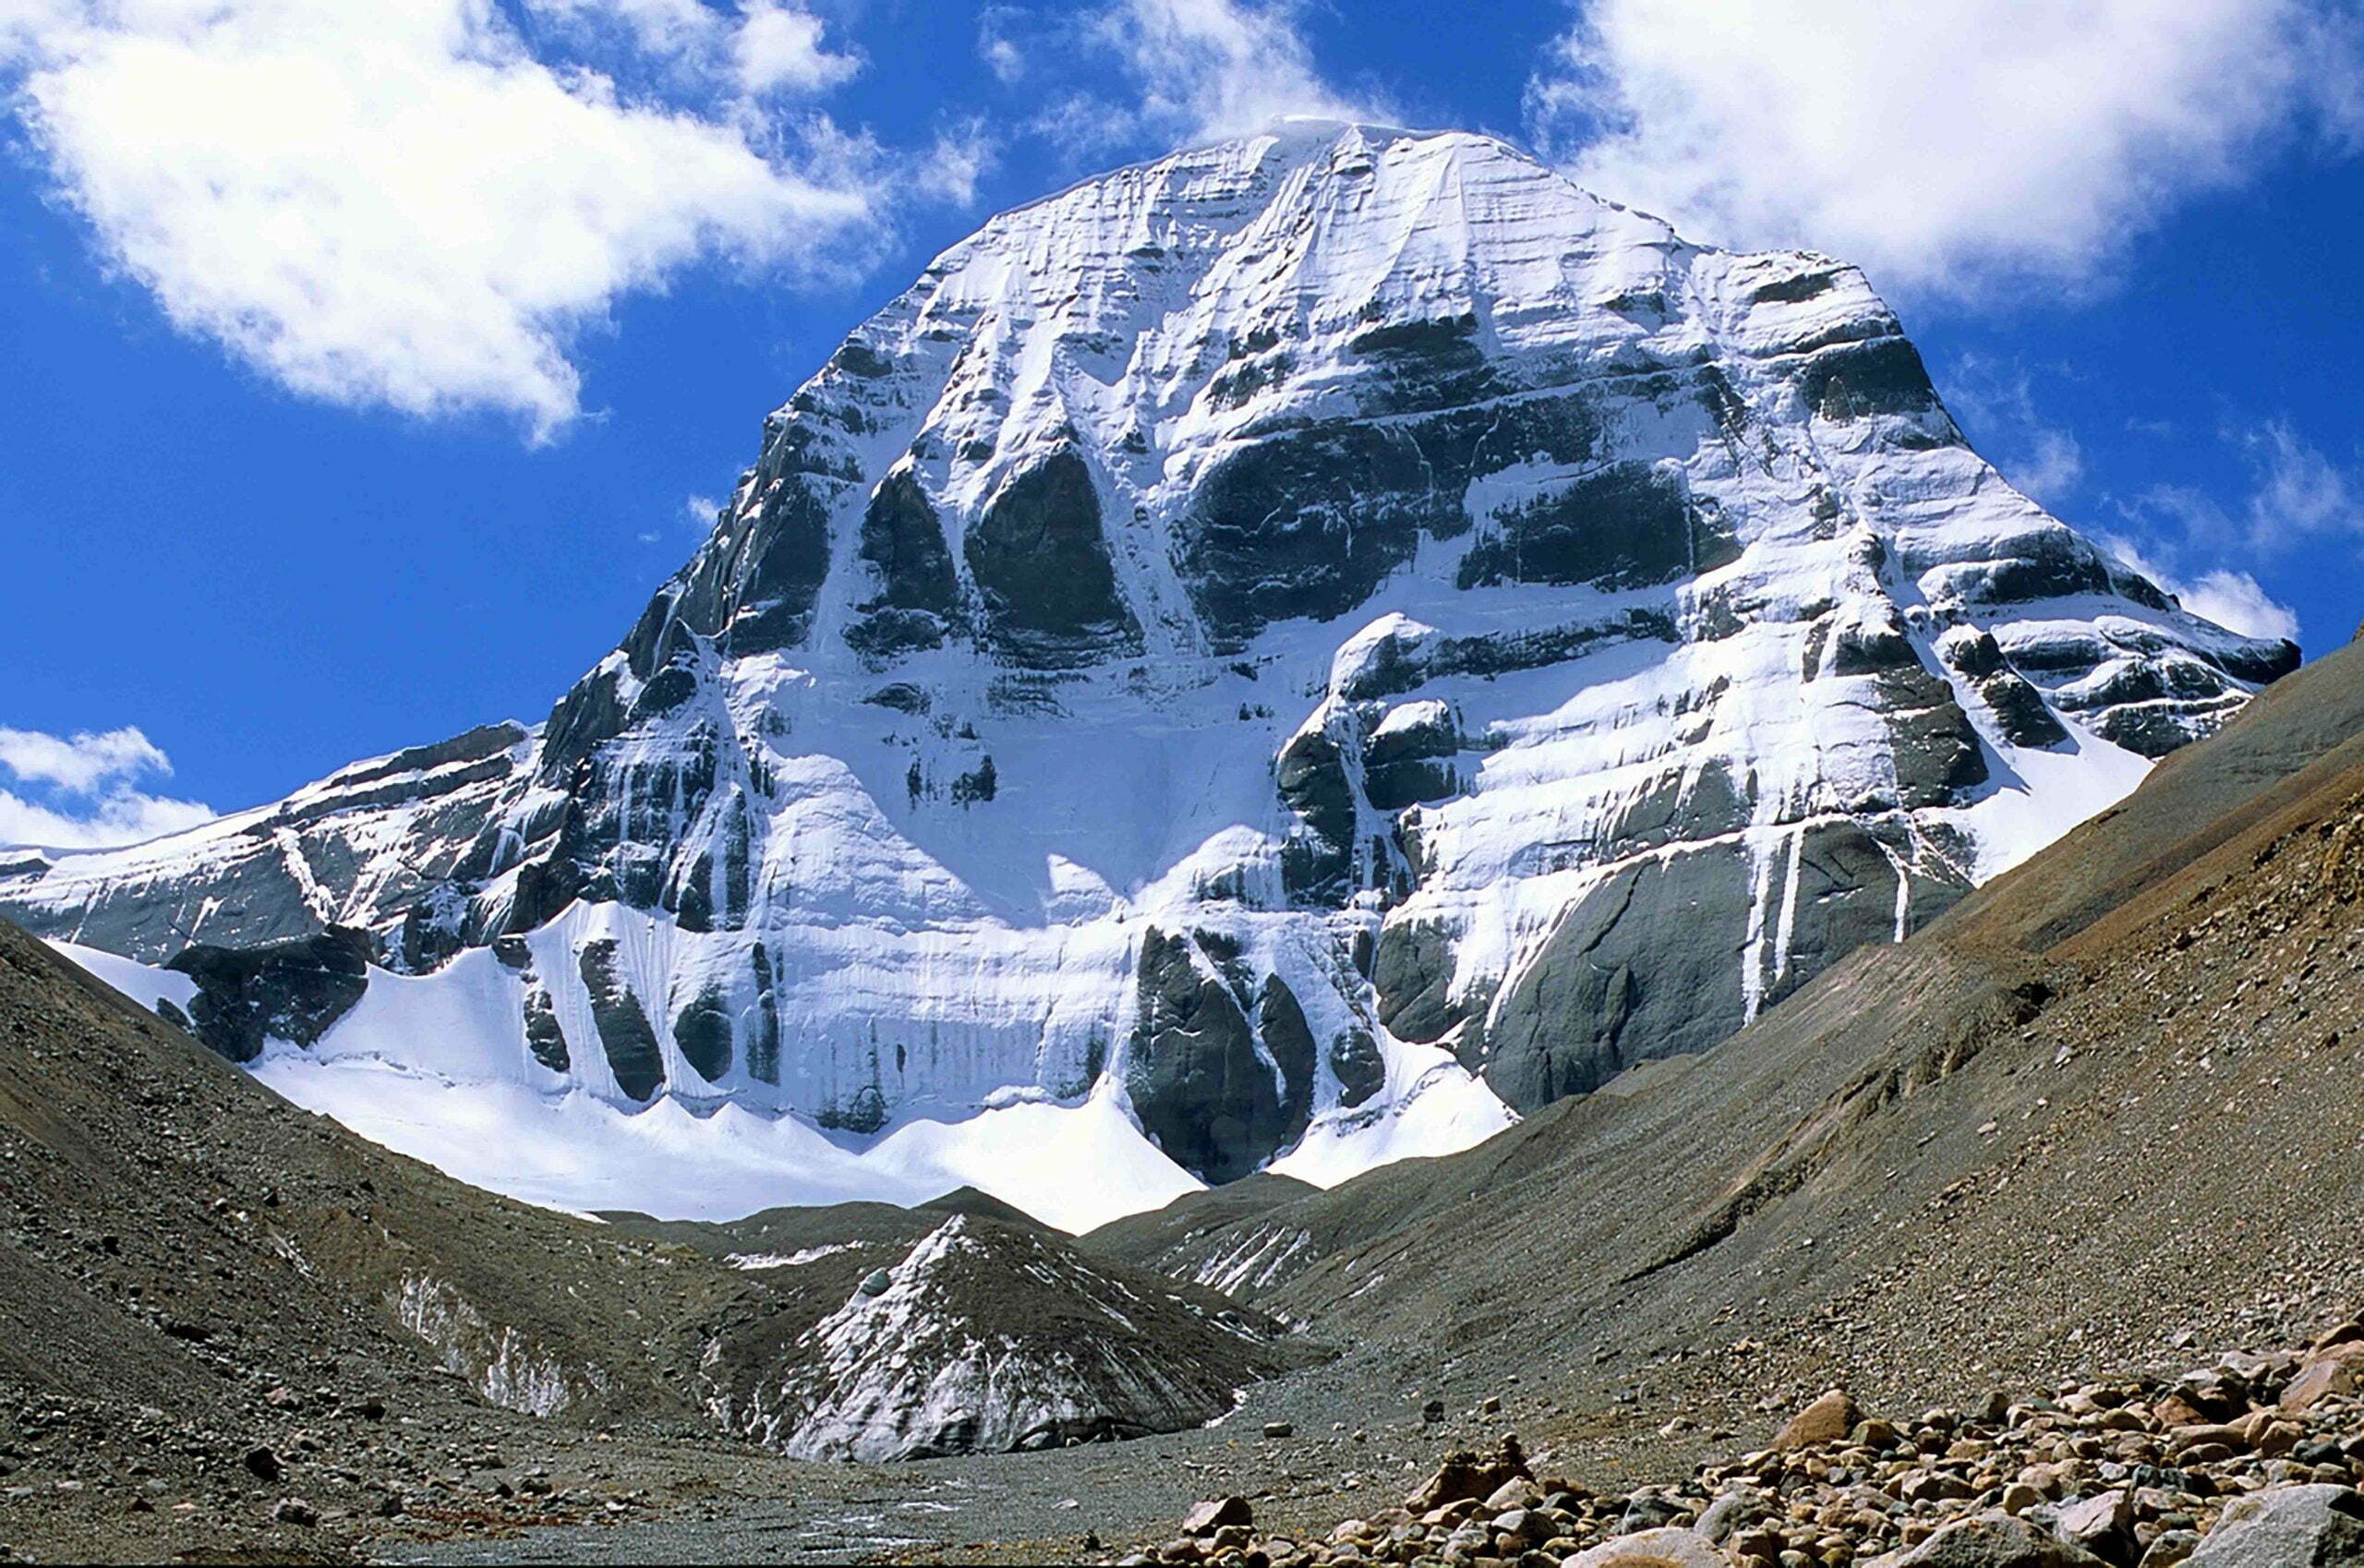 kailash mountain tour from india